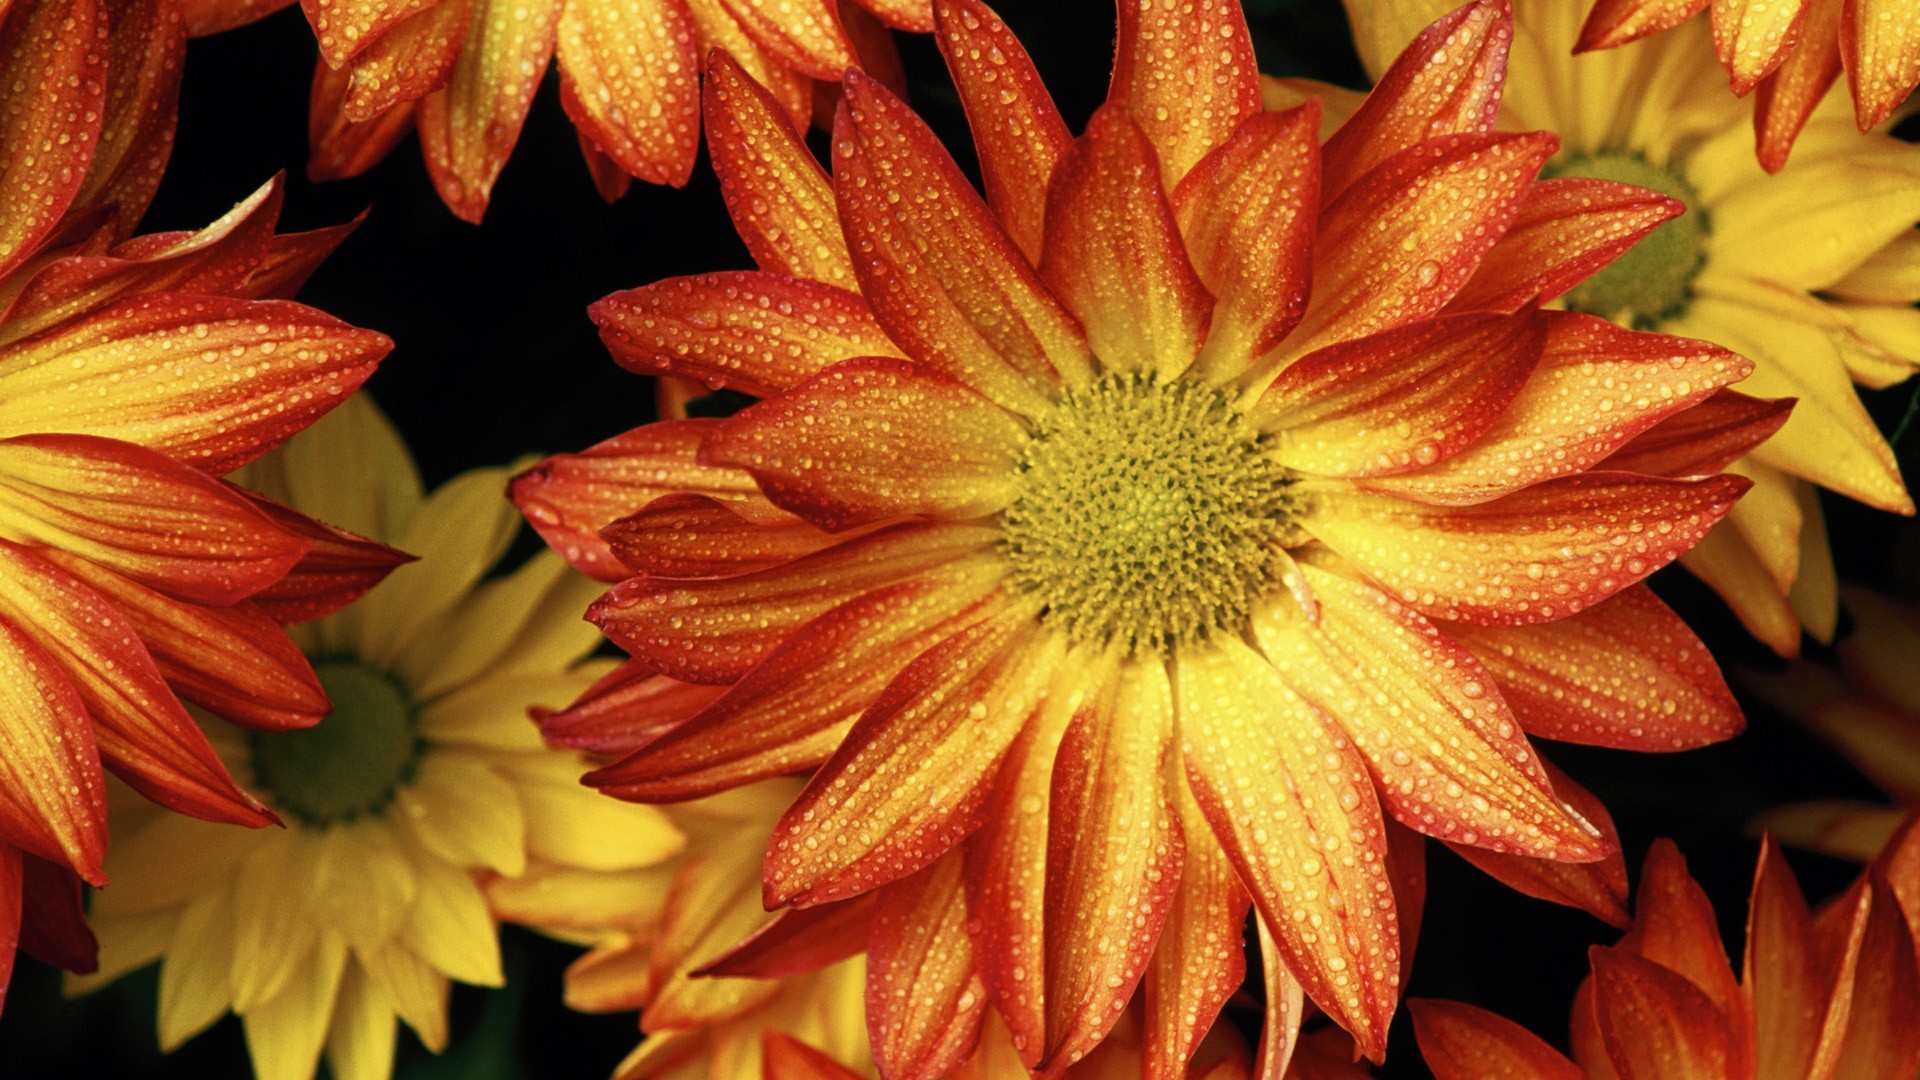 HD desktop wallpaper: Flowers, Flower, Fall, Earth, Colors, Daisy, Orange Flower download free picture